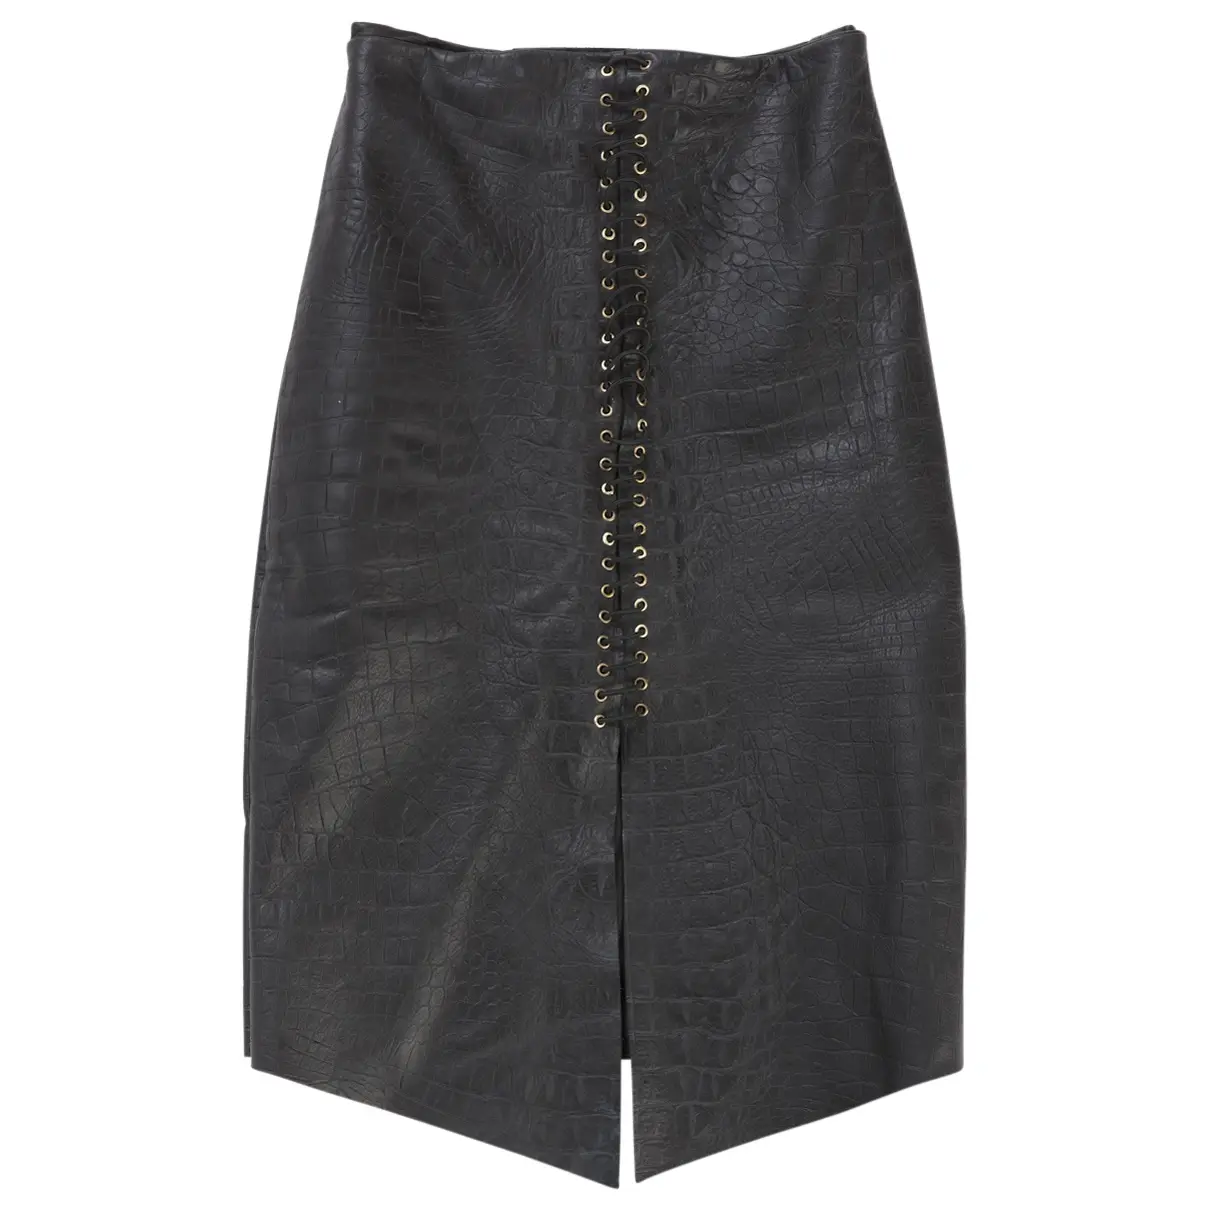 Black Leather Skirt Tessa Brasier